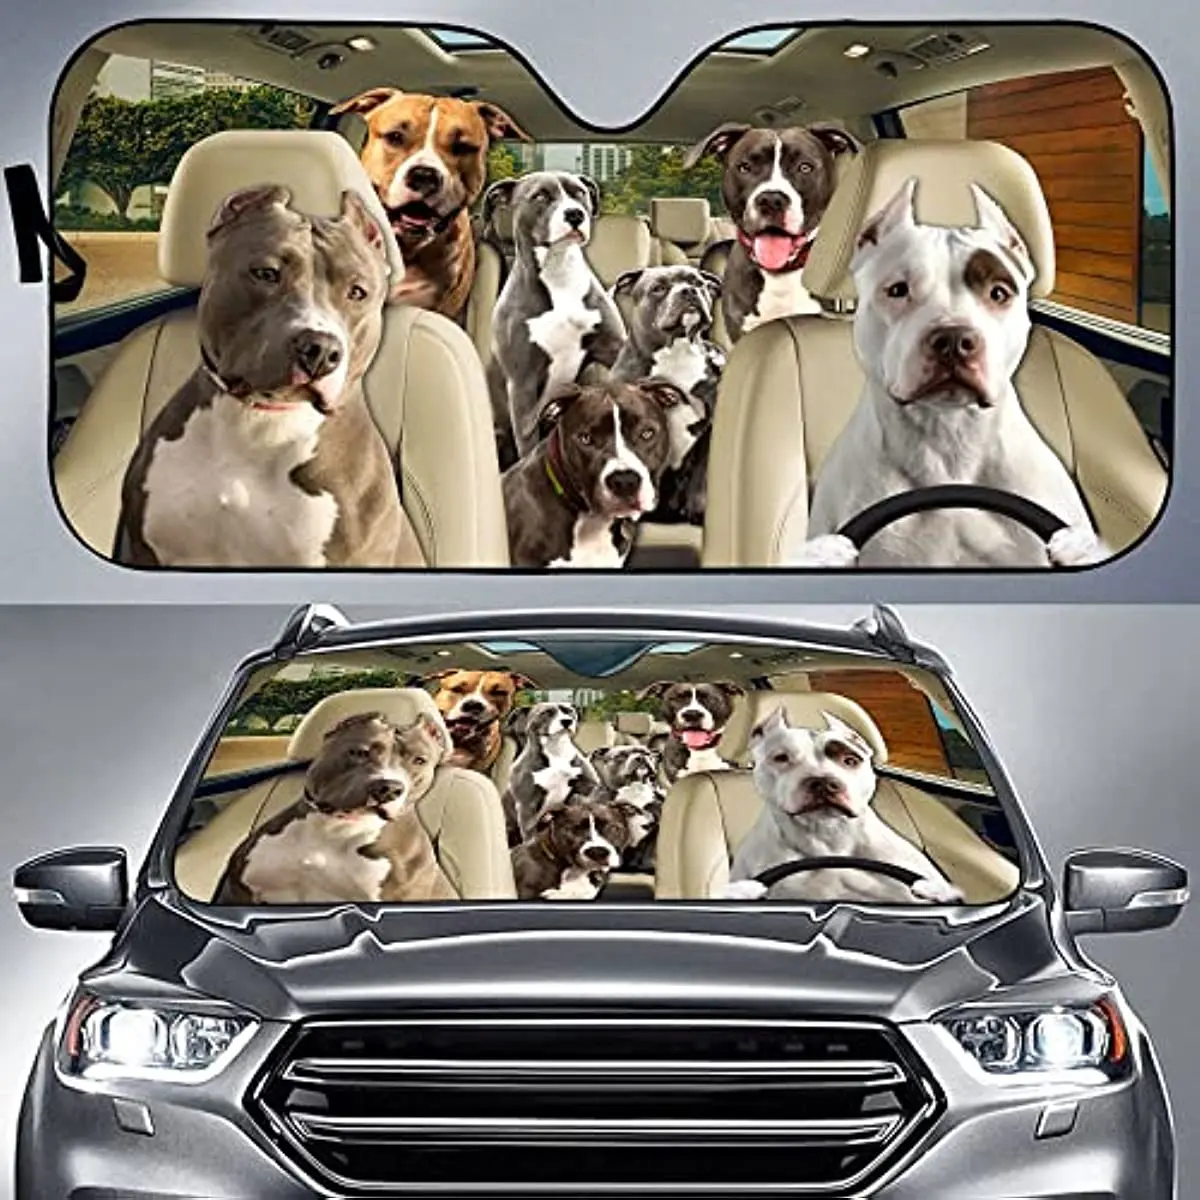 

Козырек от солнца для семейного автомобиля Pitbull Terrier, козырек от солнца для семейного вождения в поездке, козырек от солнца для лобового стекла, подарок для Pitbull T